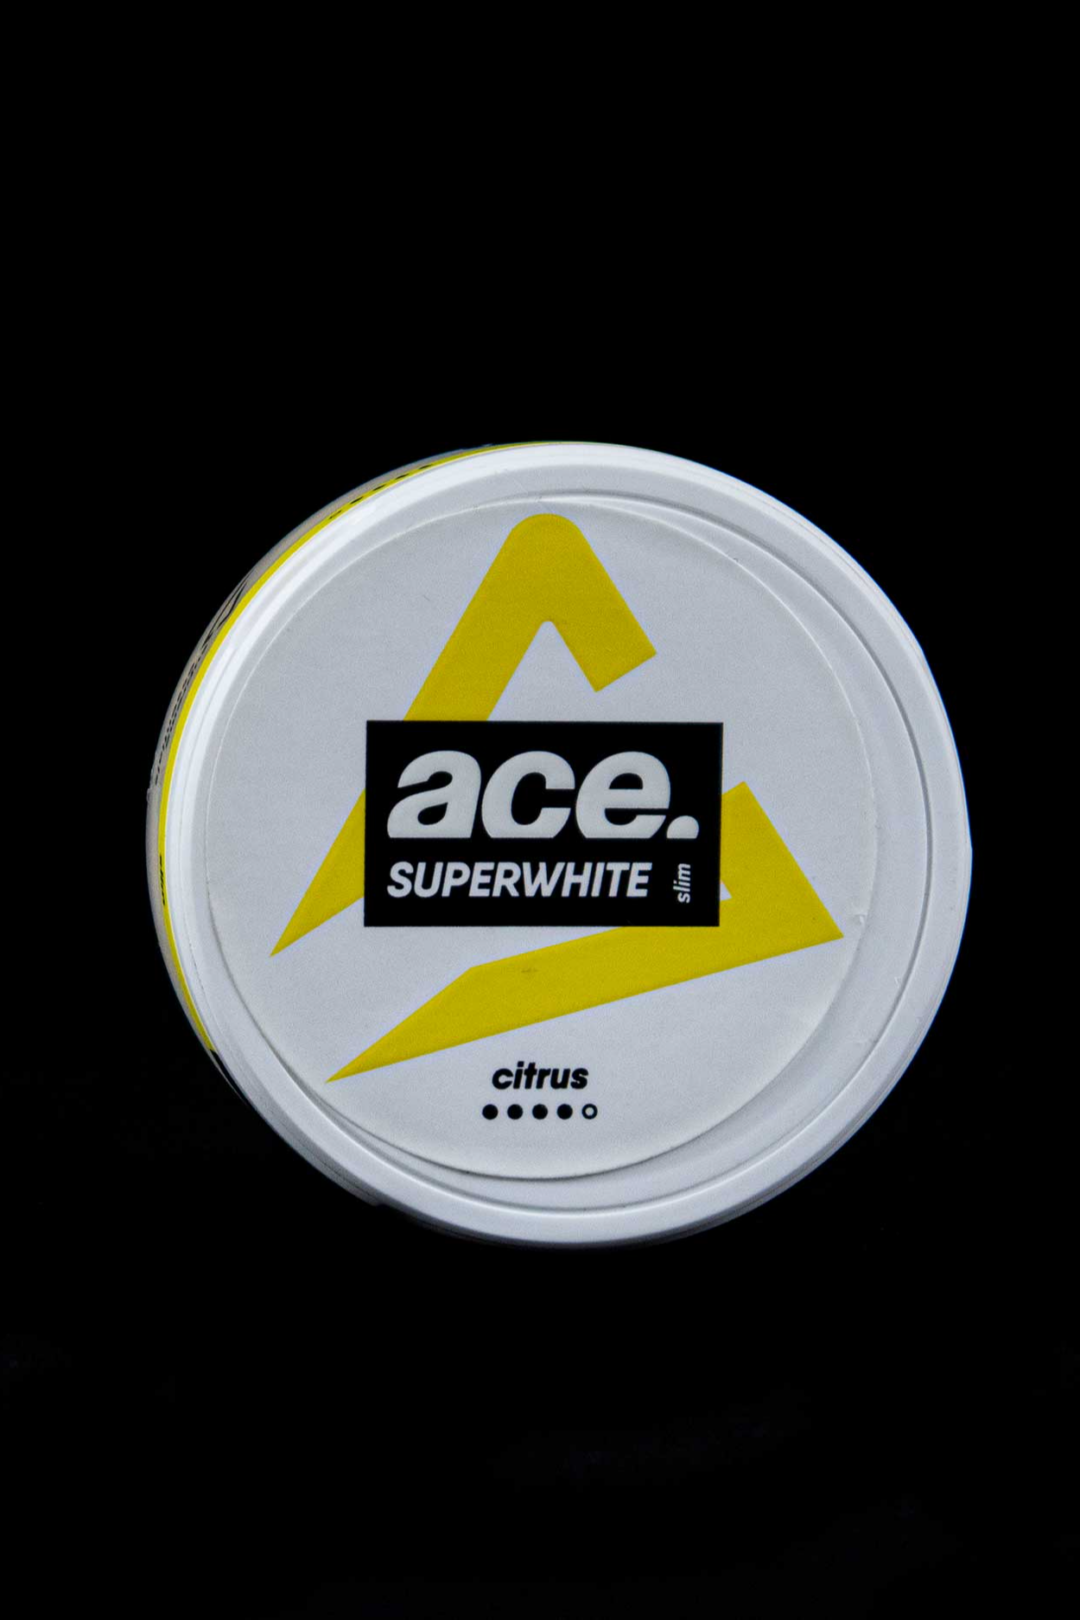 Ace Superwhite Citrus snus